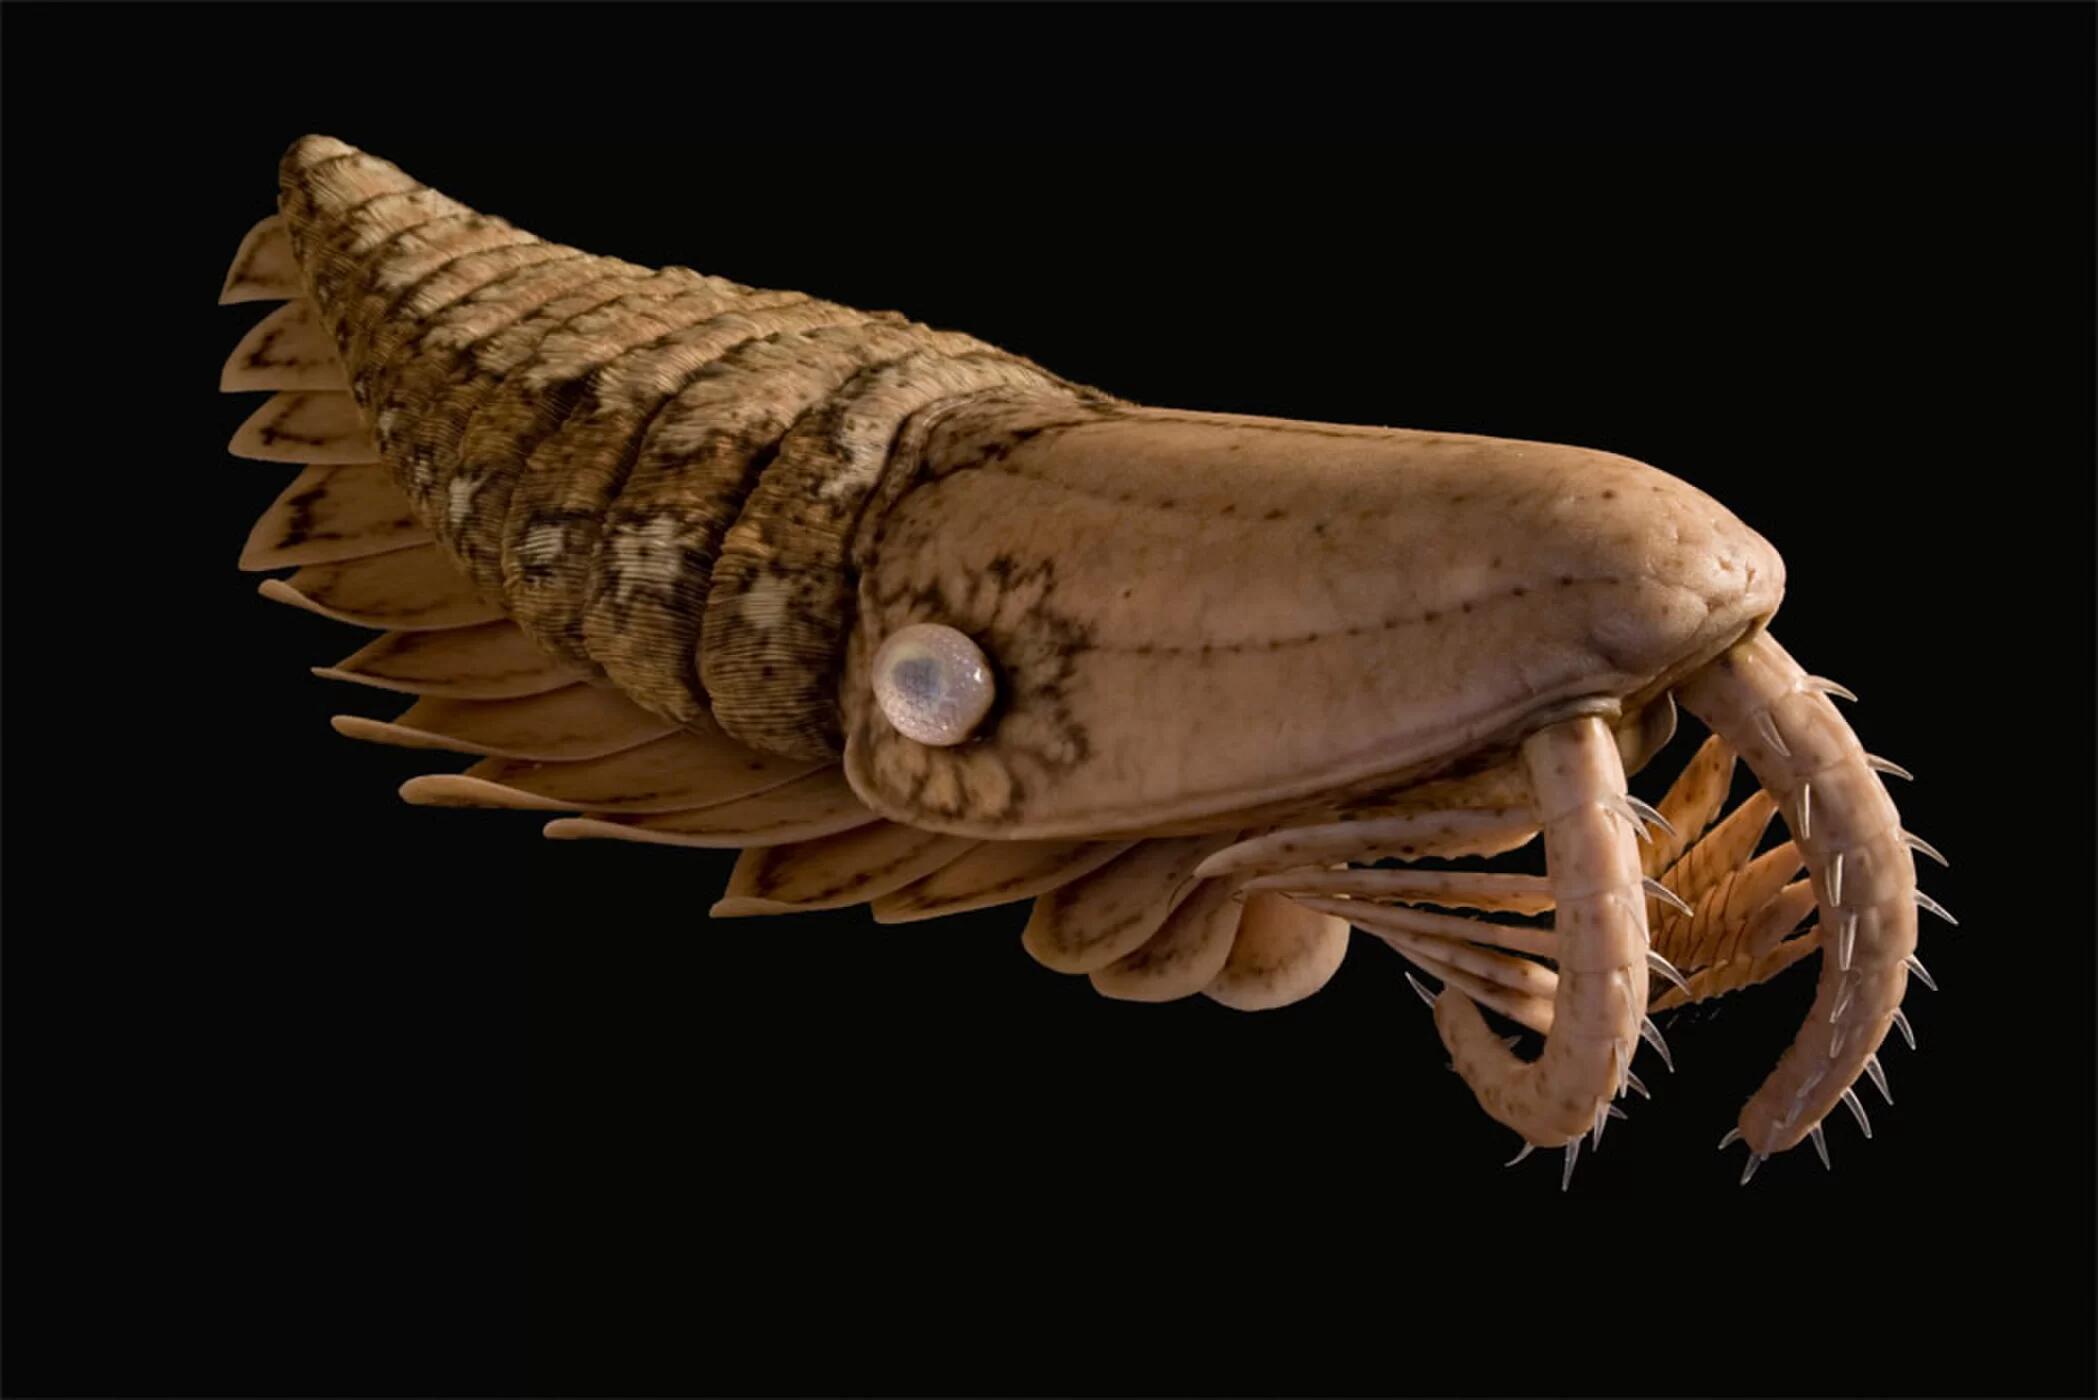 南极深海发现多种神秘生物 体型巨大奇形怪状_新闻中心_新浪网